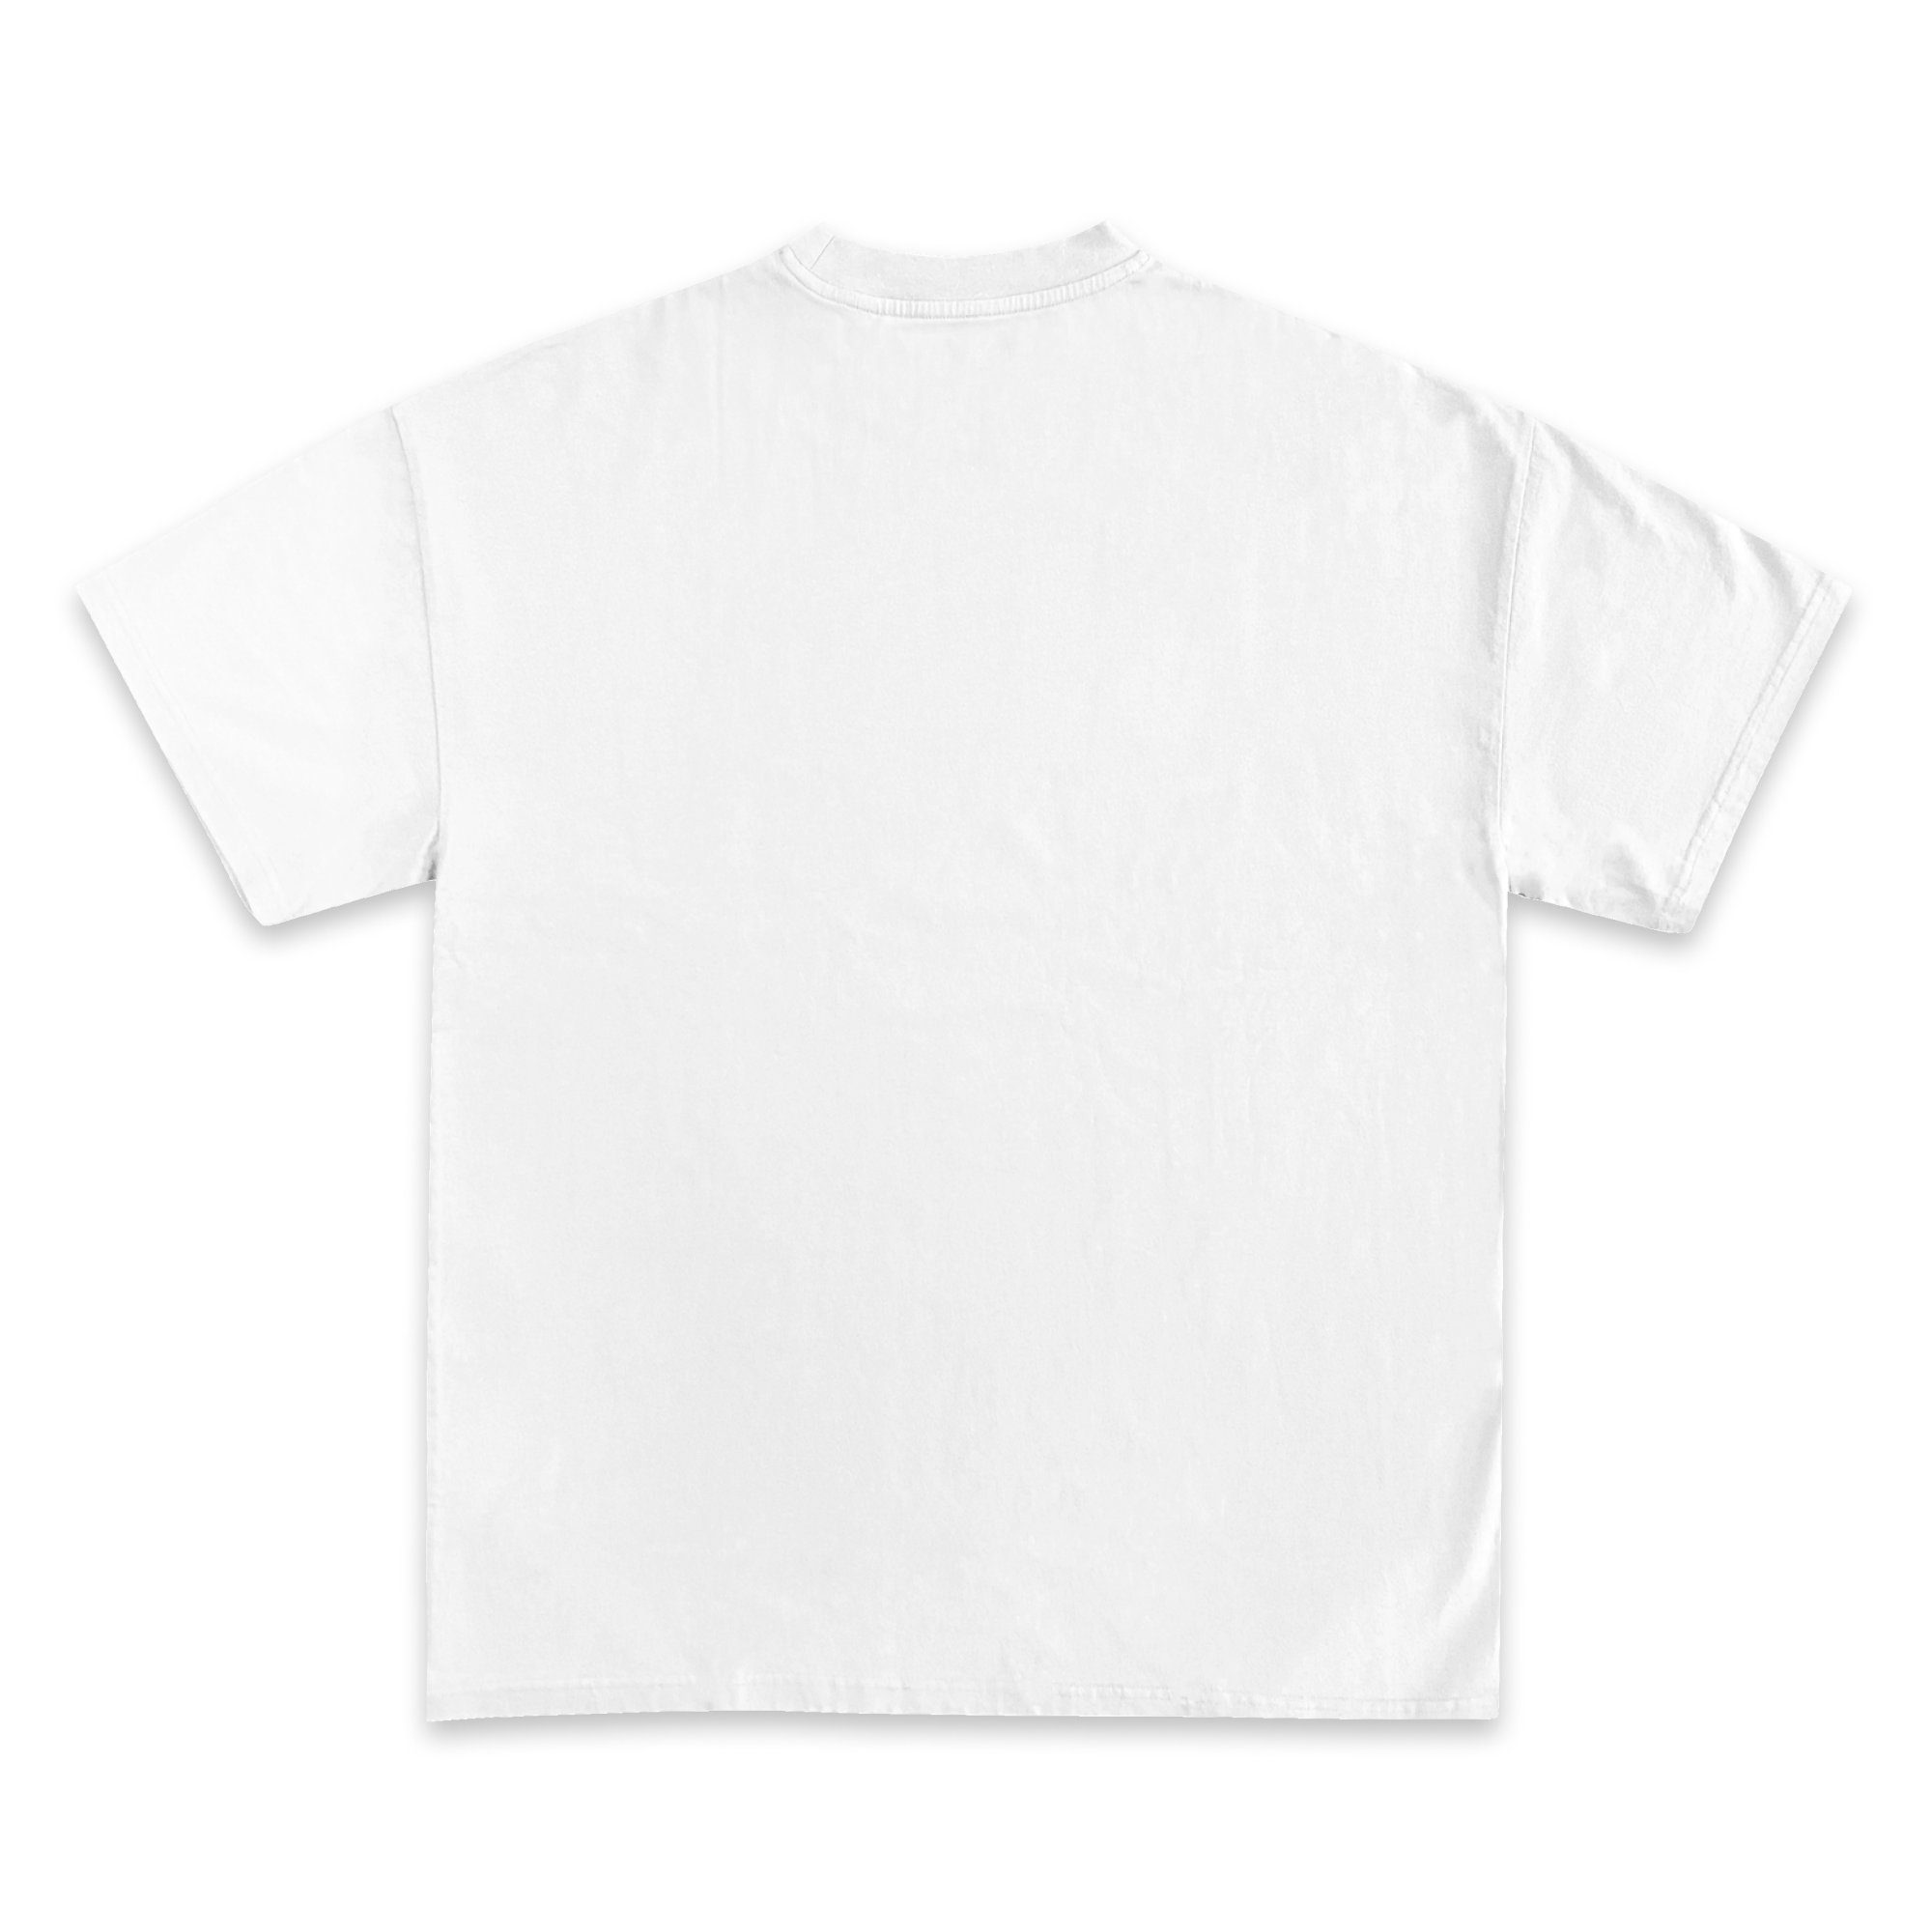 Frank Ocean Green Graphic T-Shirt